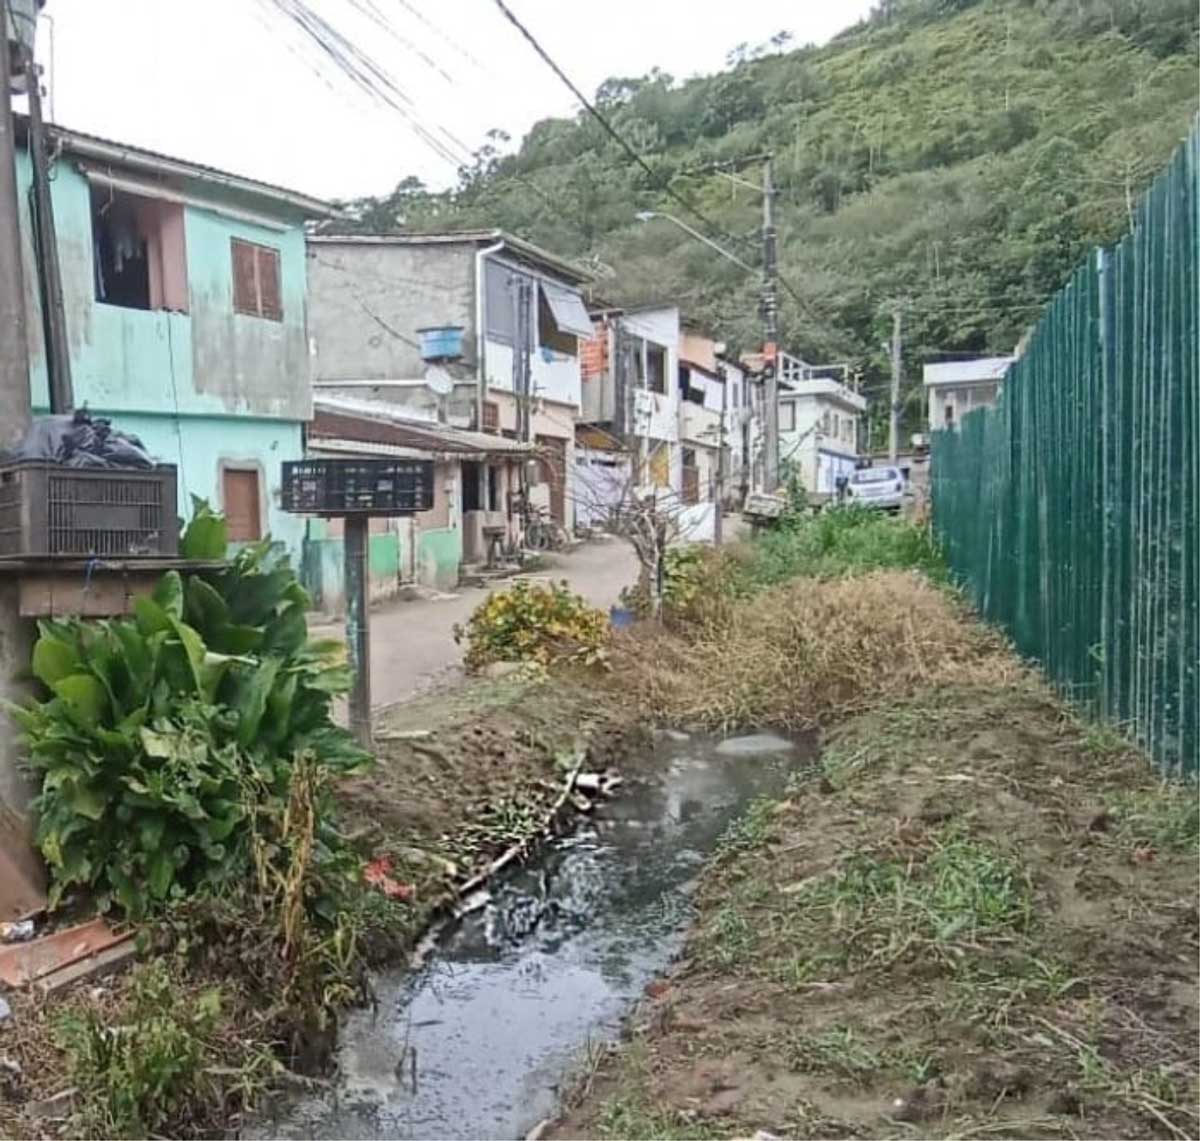 Vila Barreira - mangueiras de captação alternativa de água que abastece a comunidade passando dentro do esgoto. Imagem: Biocasa.